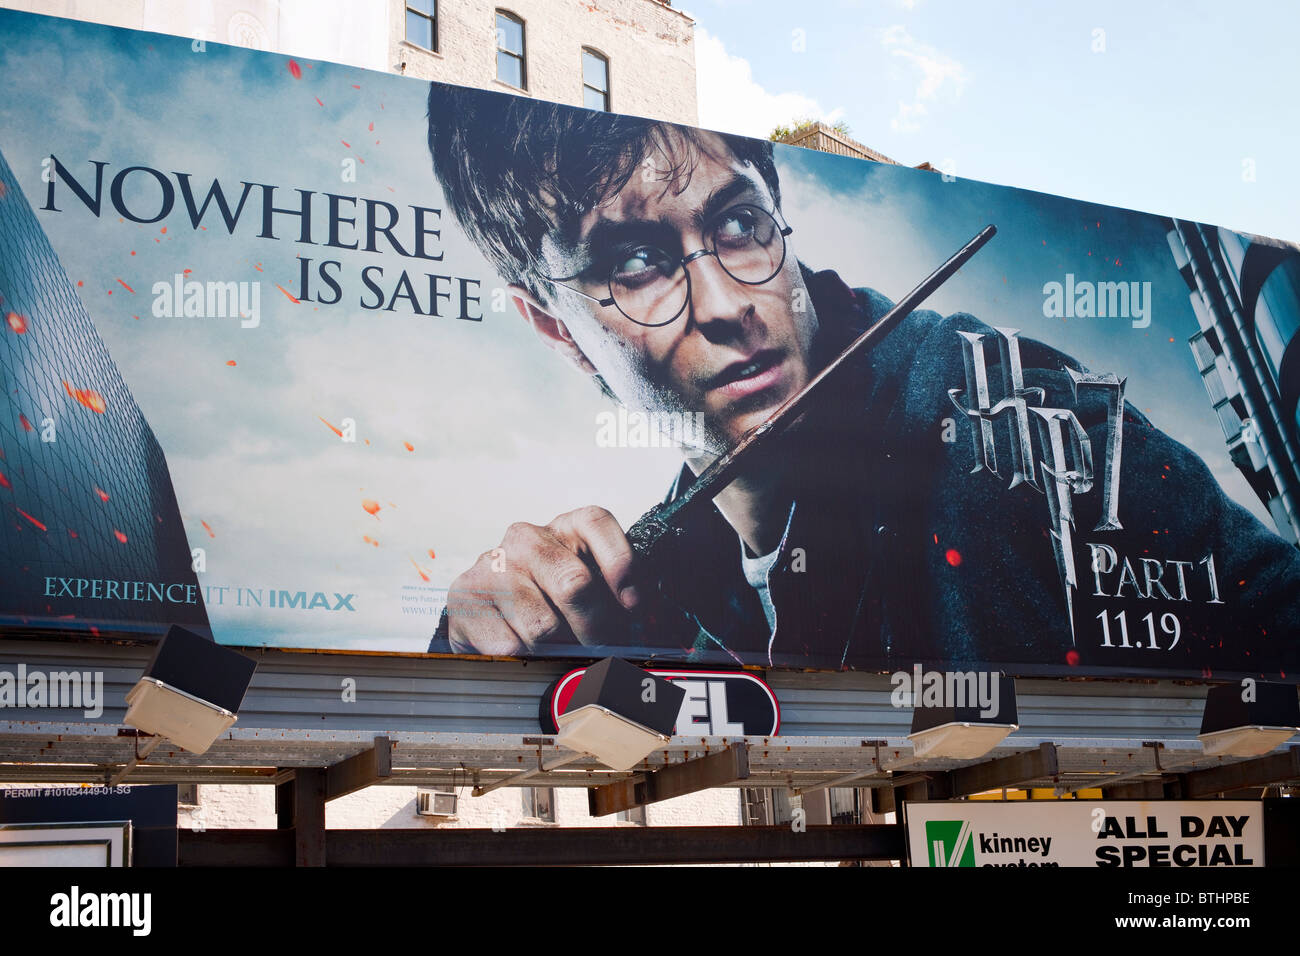 Un panneau d'affichage le nouveau film de Harry Potter, "Harry Potter et les Reliques de la', vu à New York Banque D'Images